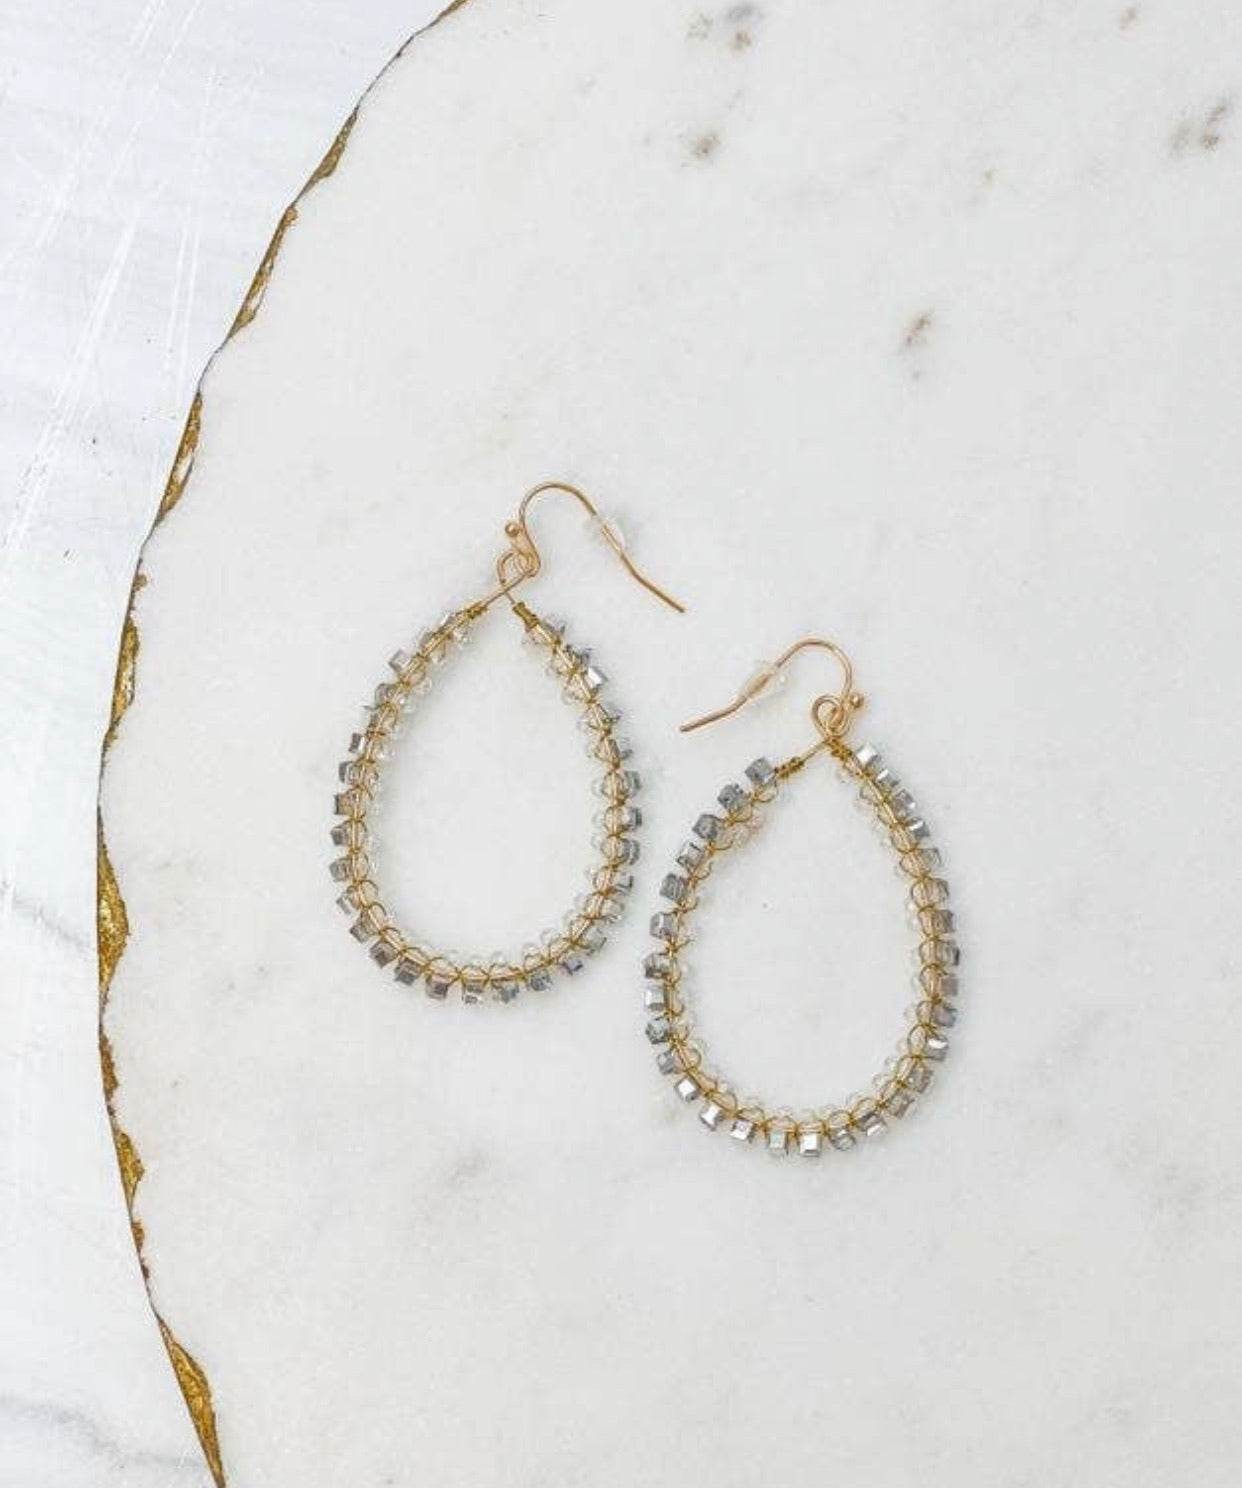 Oval glass earrings